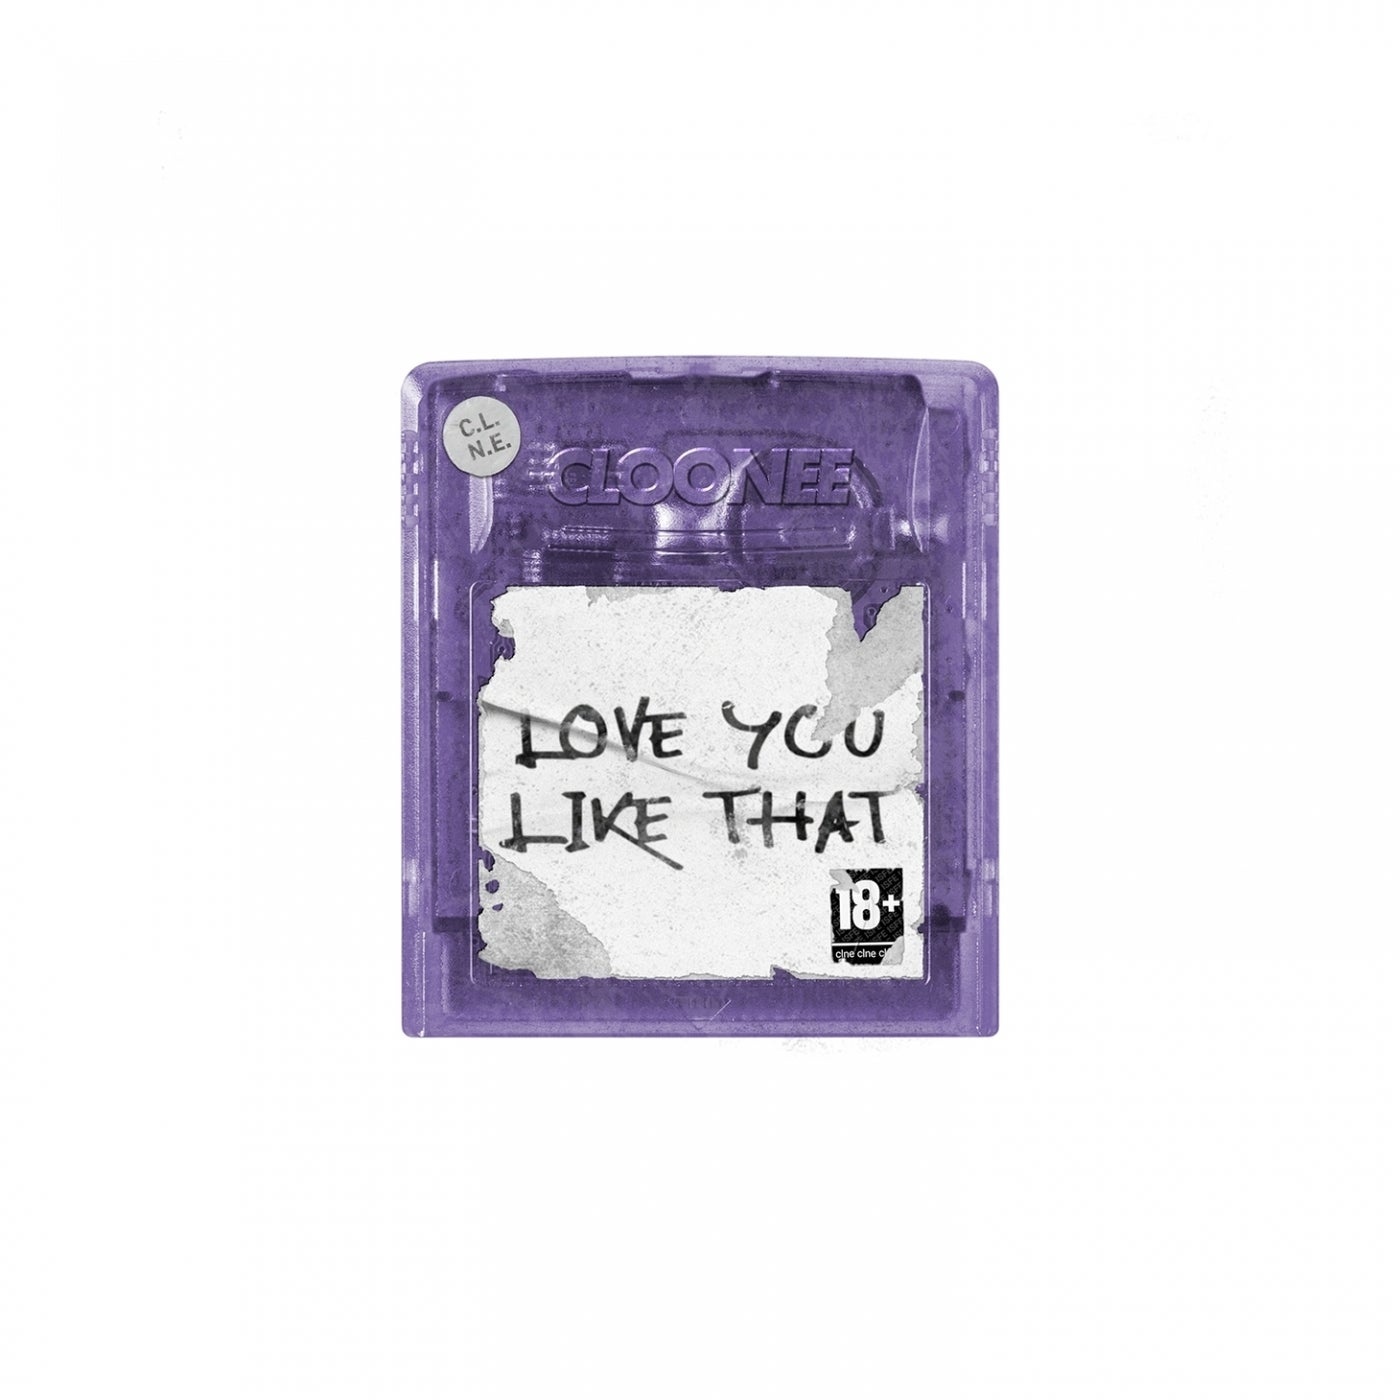 Cloonee - Love You Like That [CLNE007]